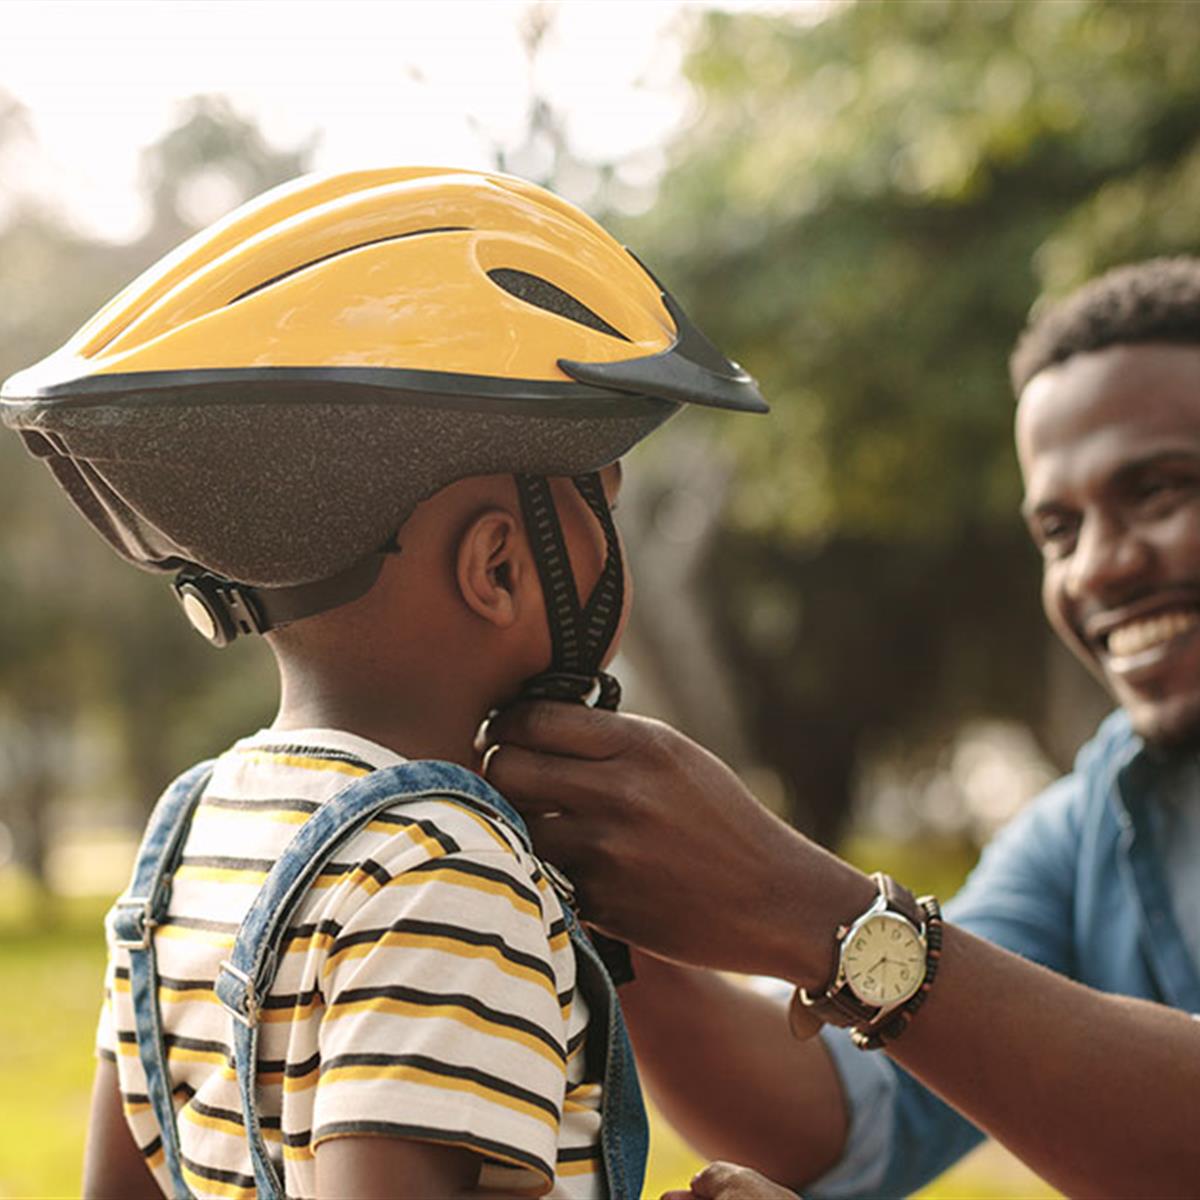 Reducción Albardilla cáustico Los cascos para bicicleta: qué deben saber los padres - HealthyChildren.org